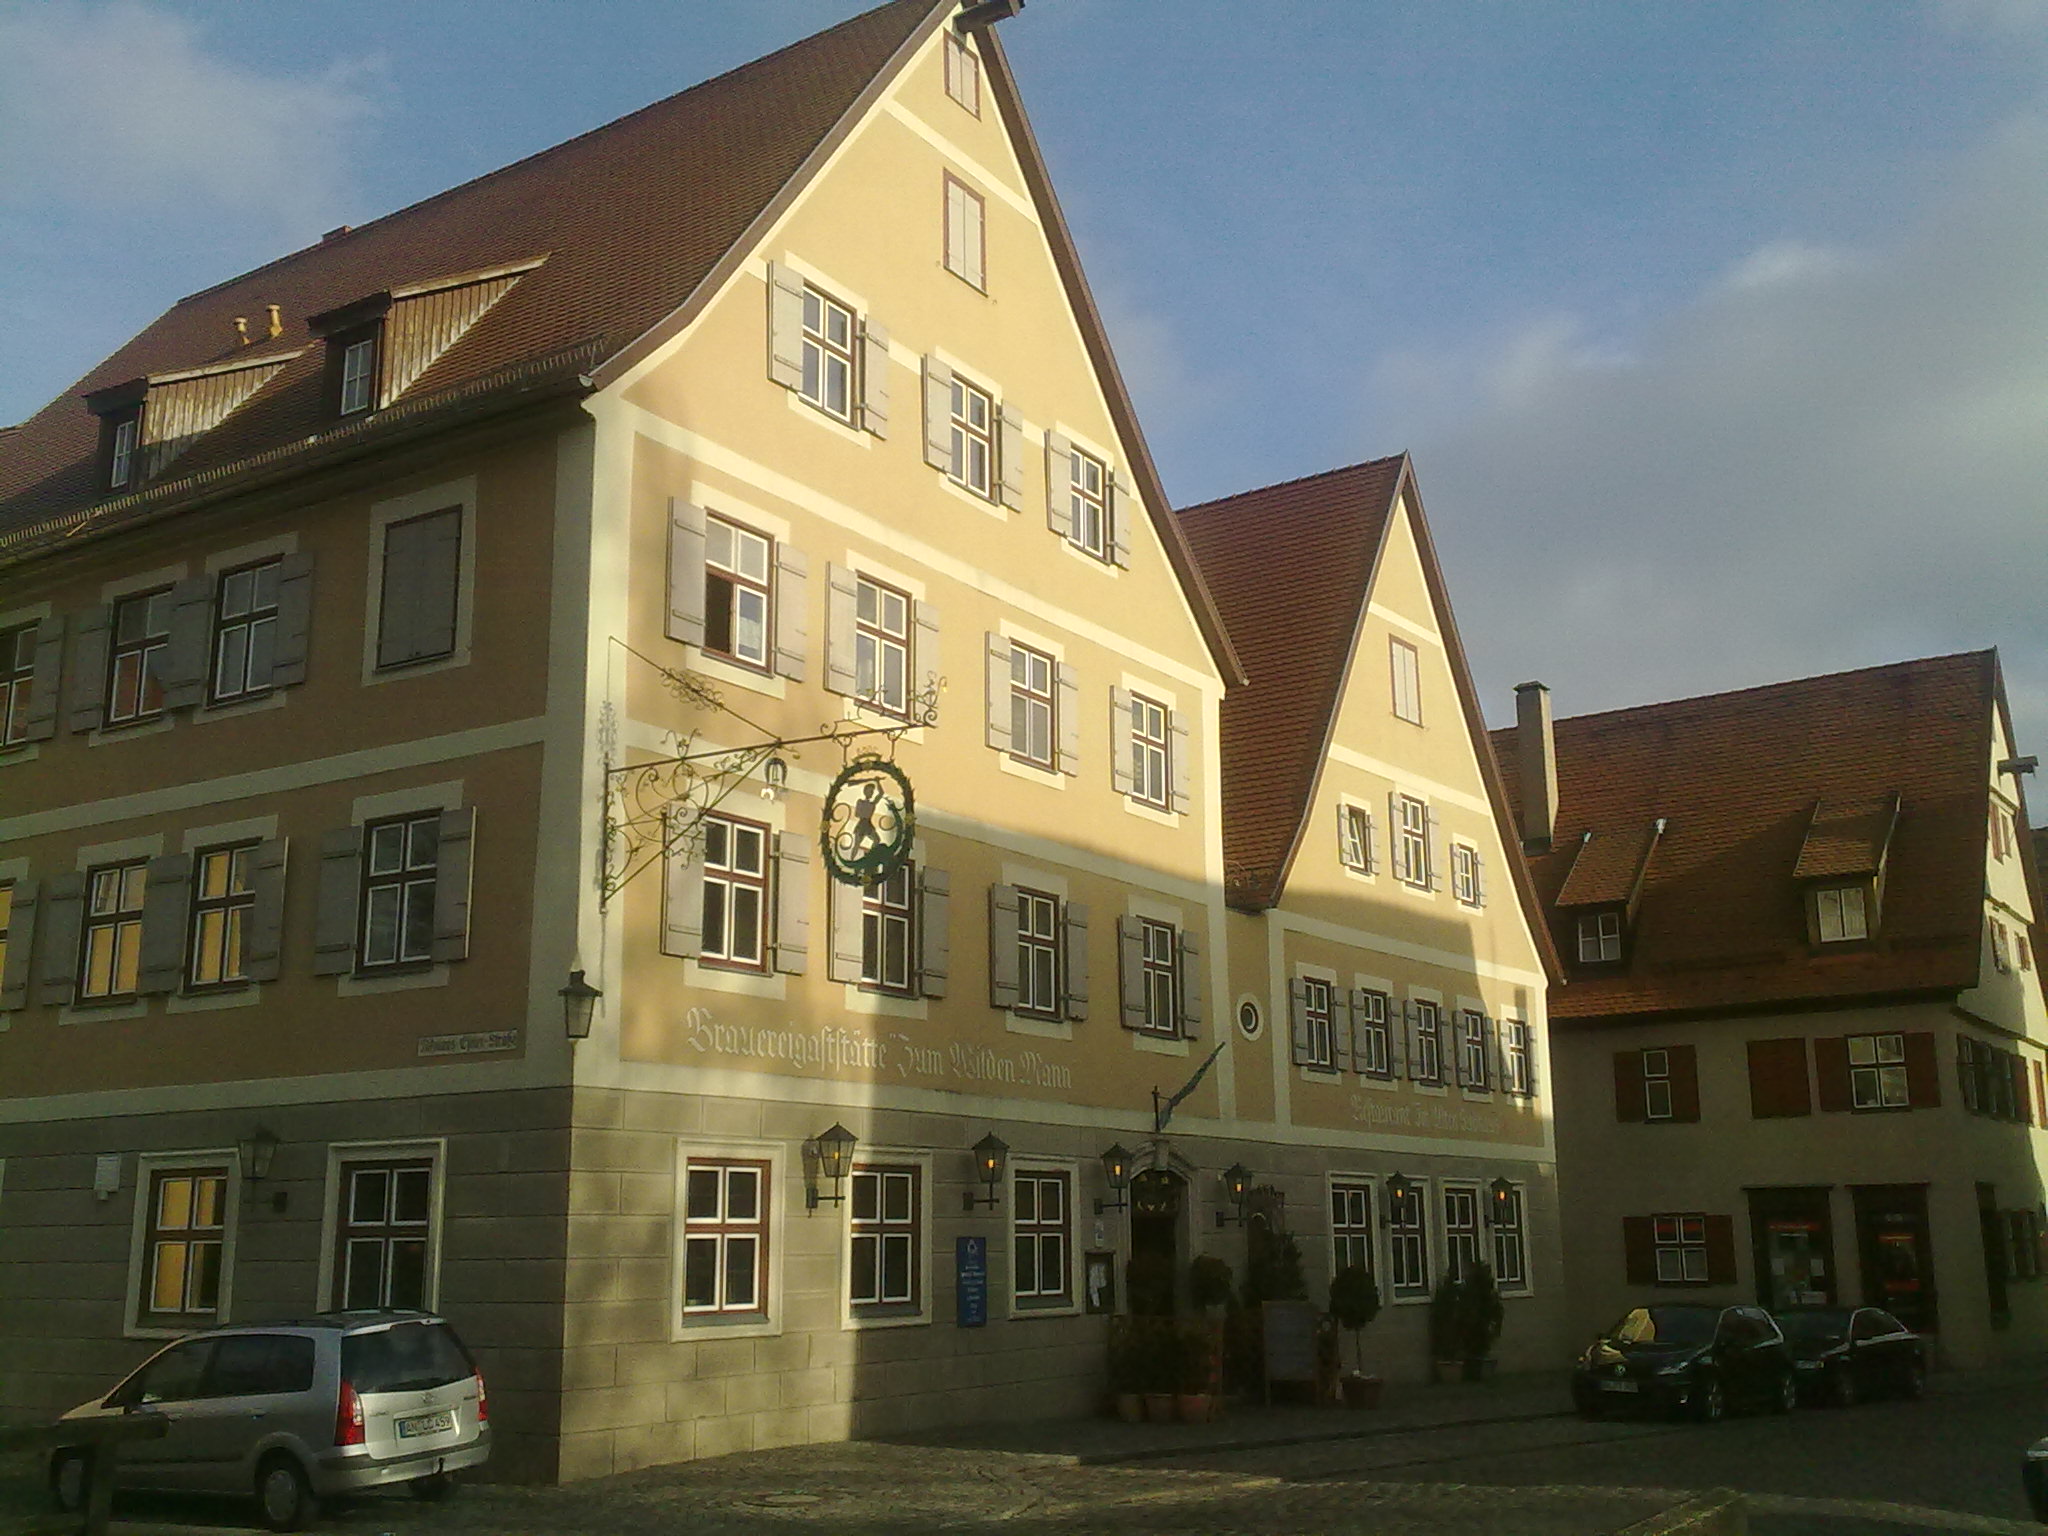 Bild 1 Brauereigaststätte "Zum wilden Mann" in Dinkelsbühl